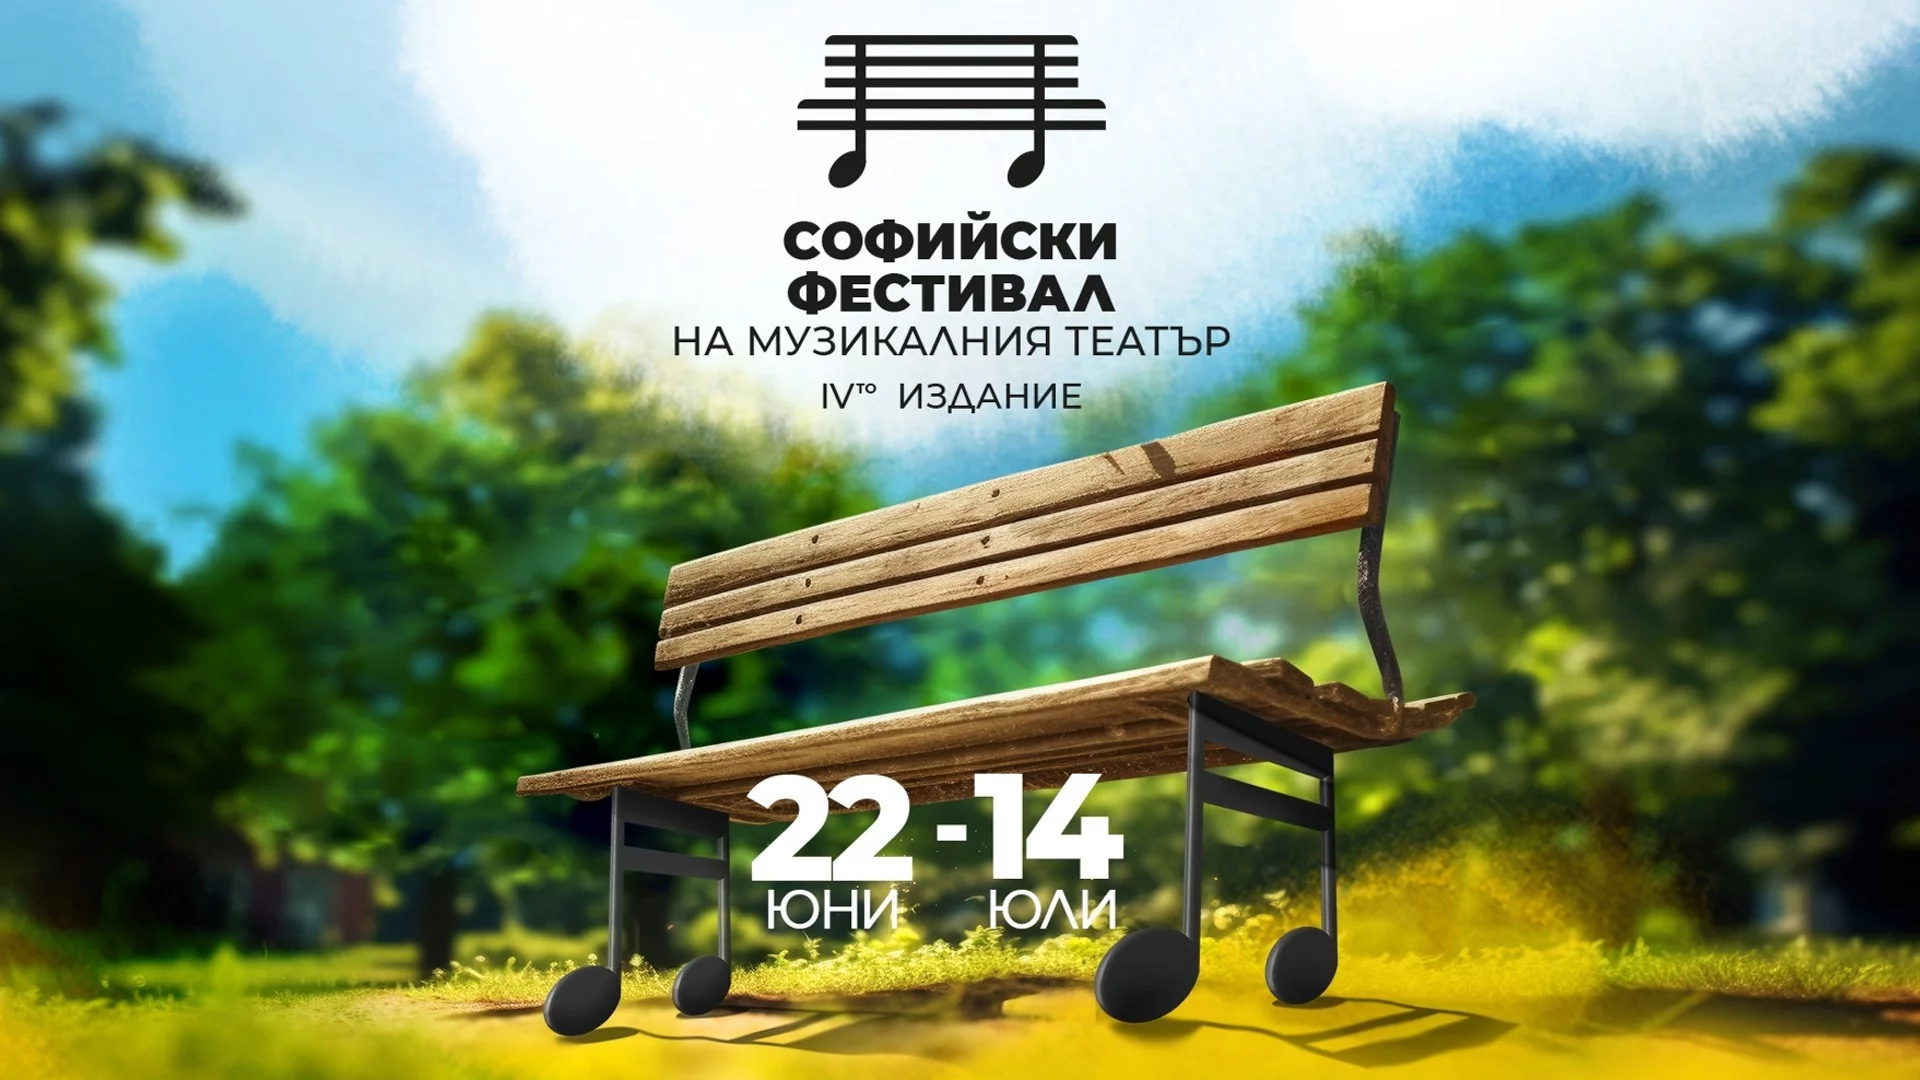 Четвърто издание на Софийски фестивал на Музикалния театър